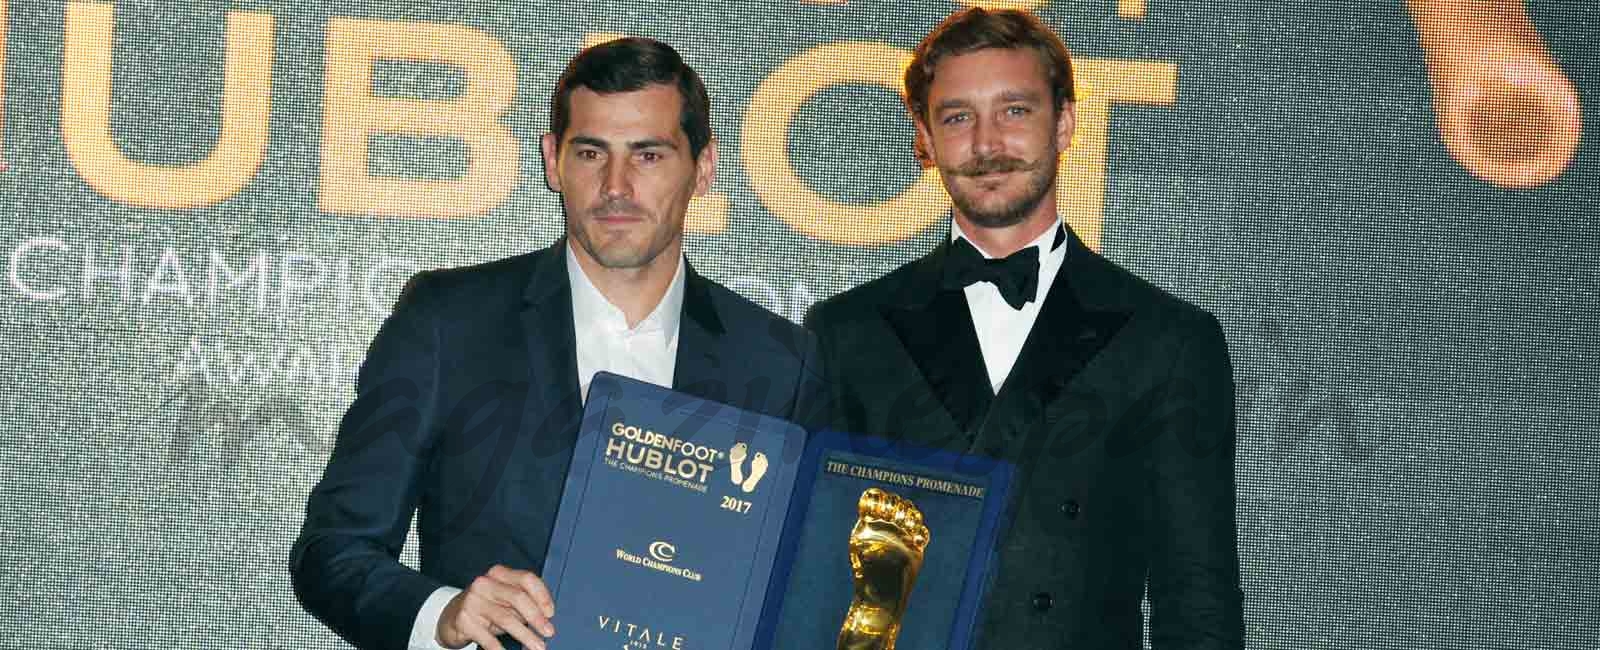 Sara Carbonero acompaña a Iker Casillas a recoger el premio Golden Foot